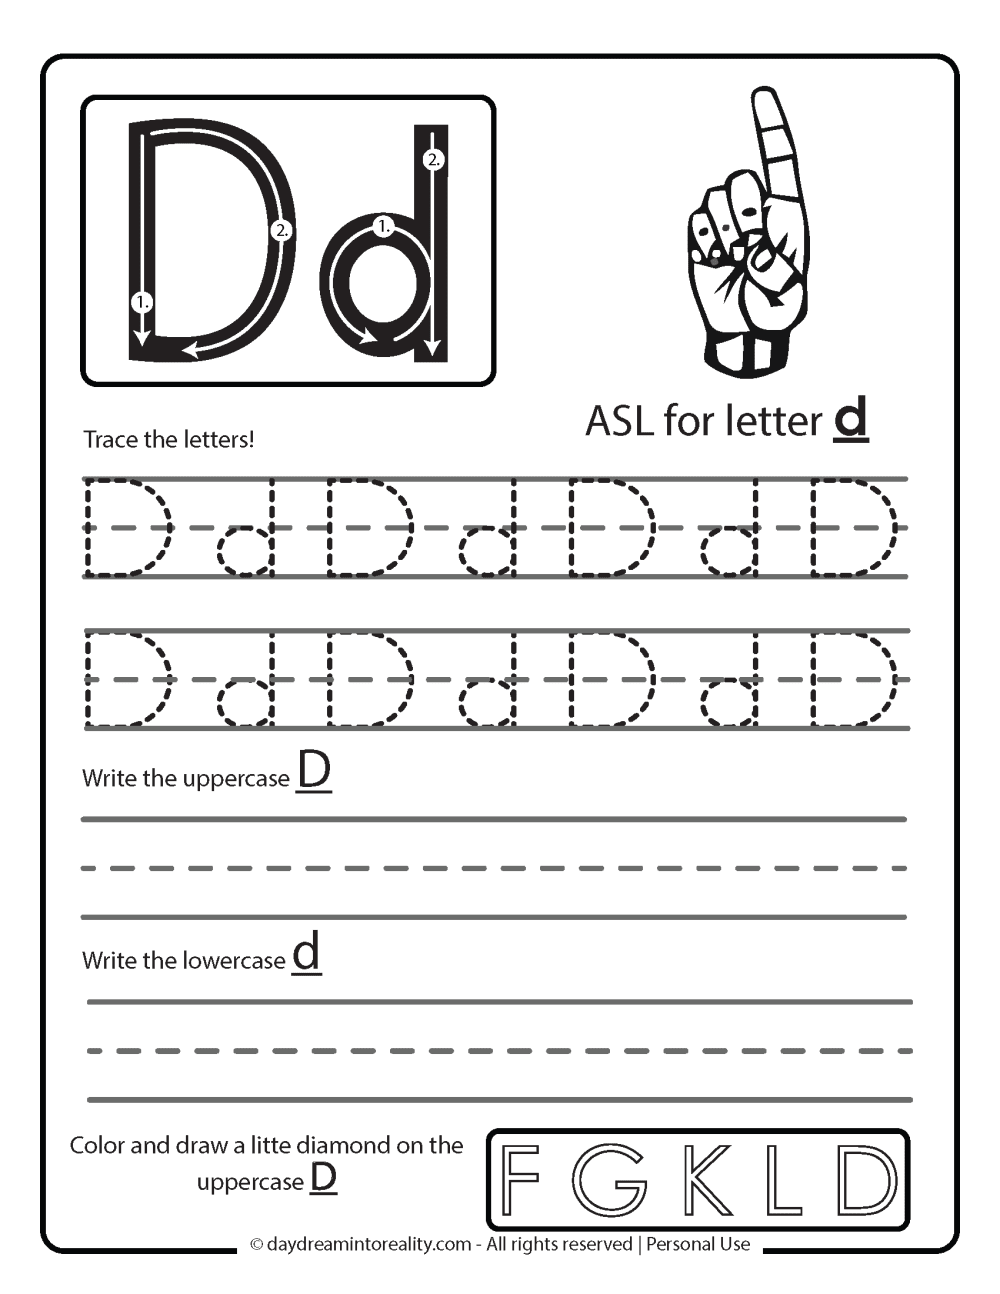 Letter D worksheet free printables - writing practice - asl for letter d